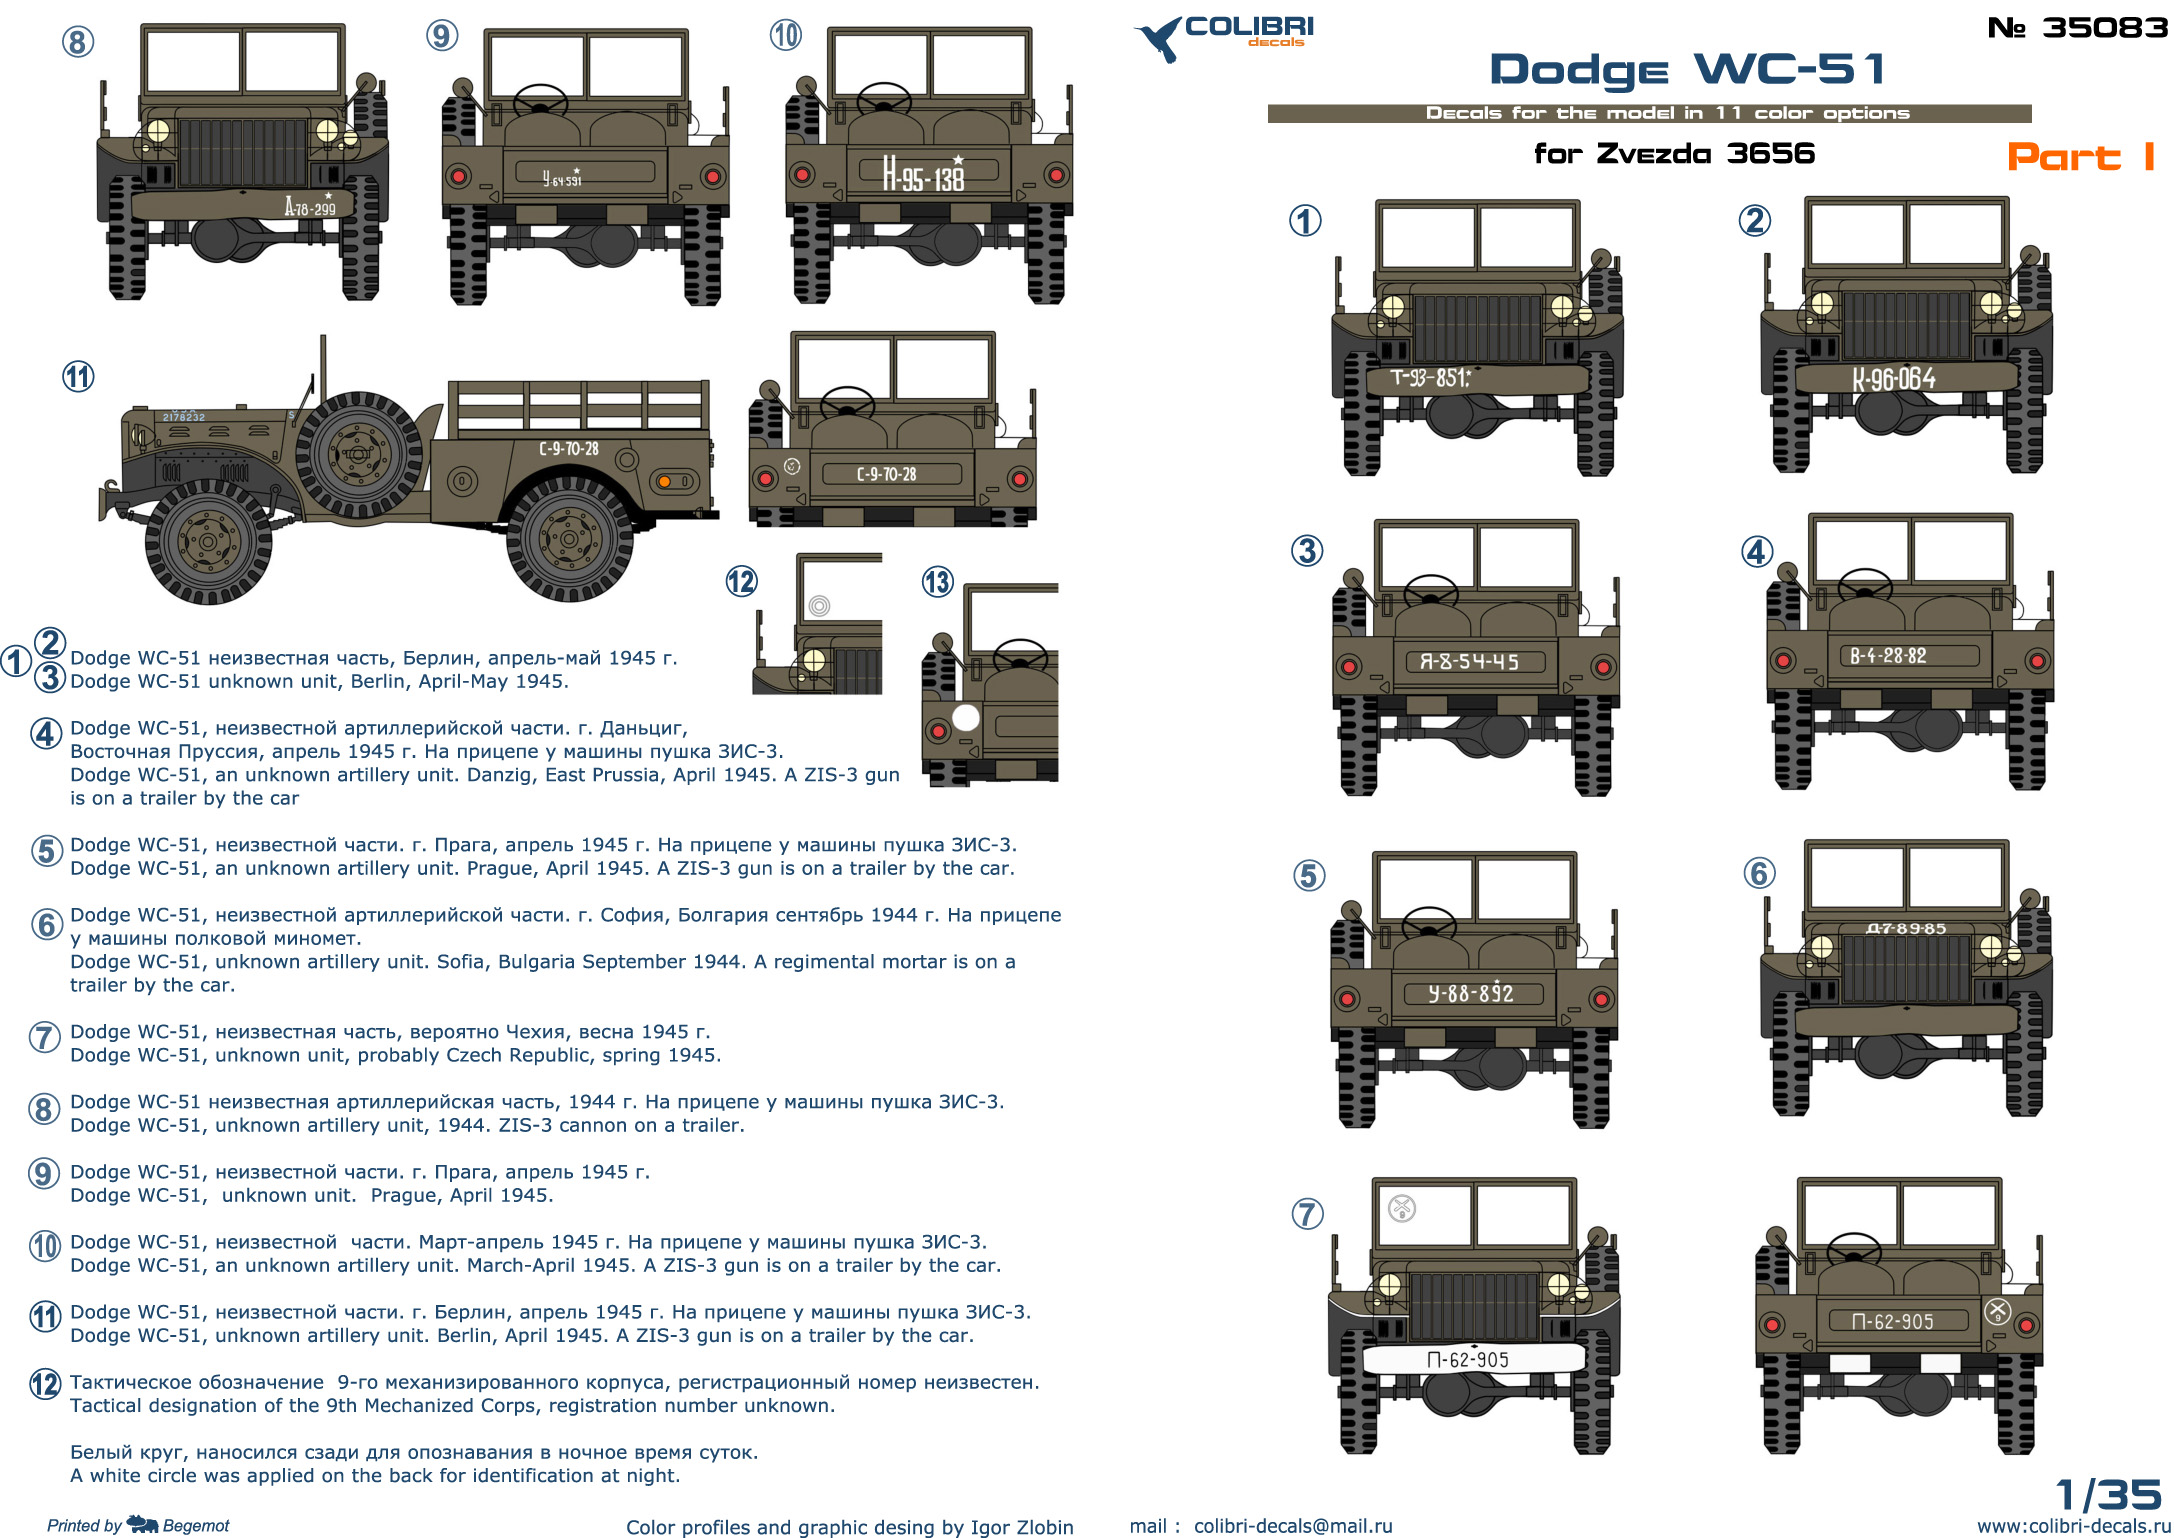 Decal 1/35 Dodge WC-51 part I(Colibri Decals)